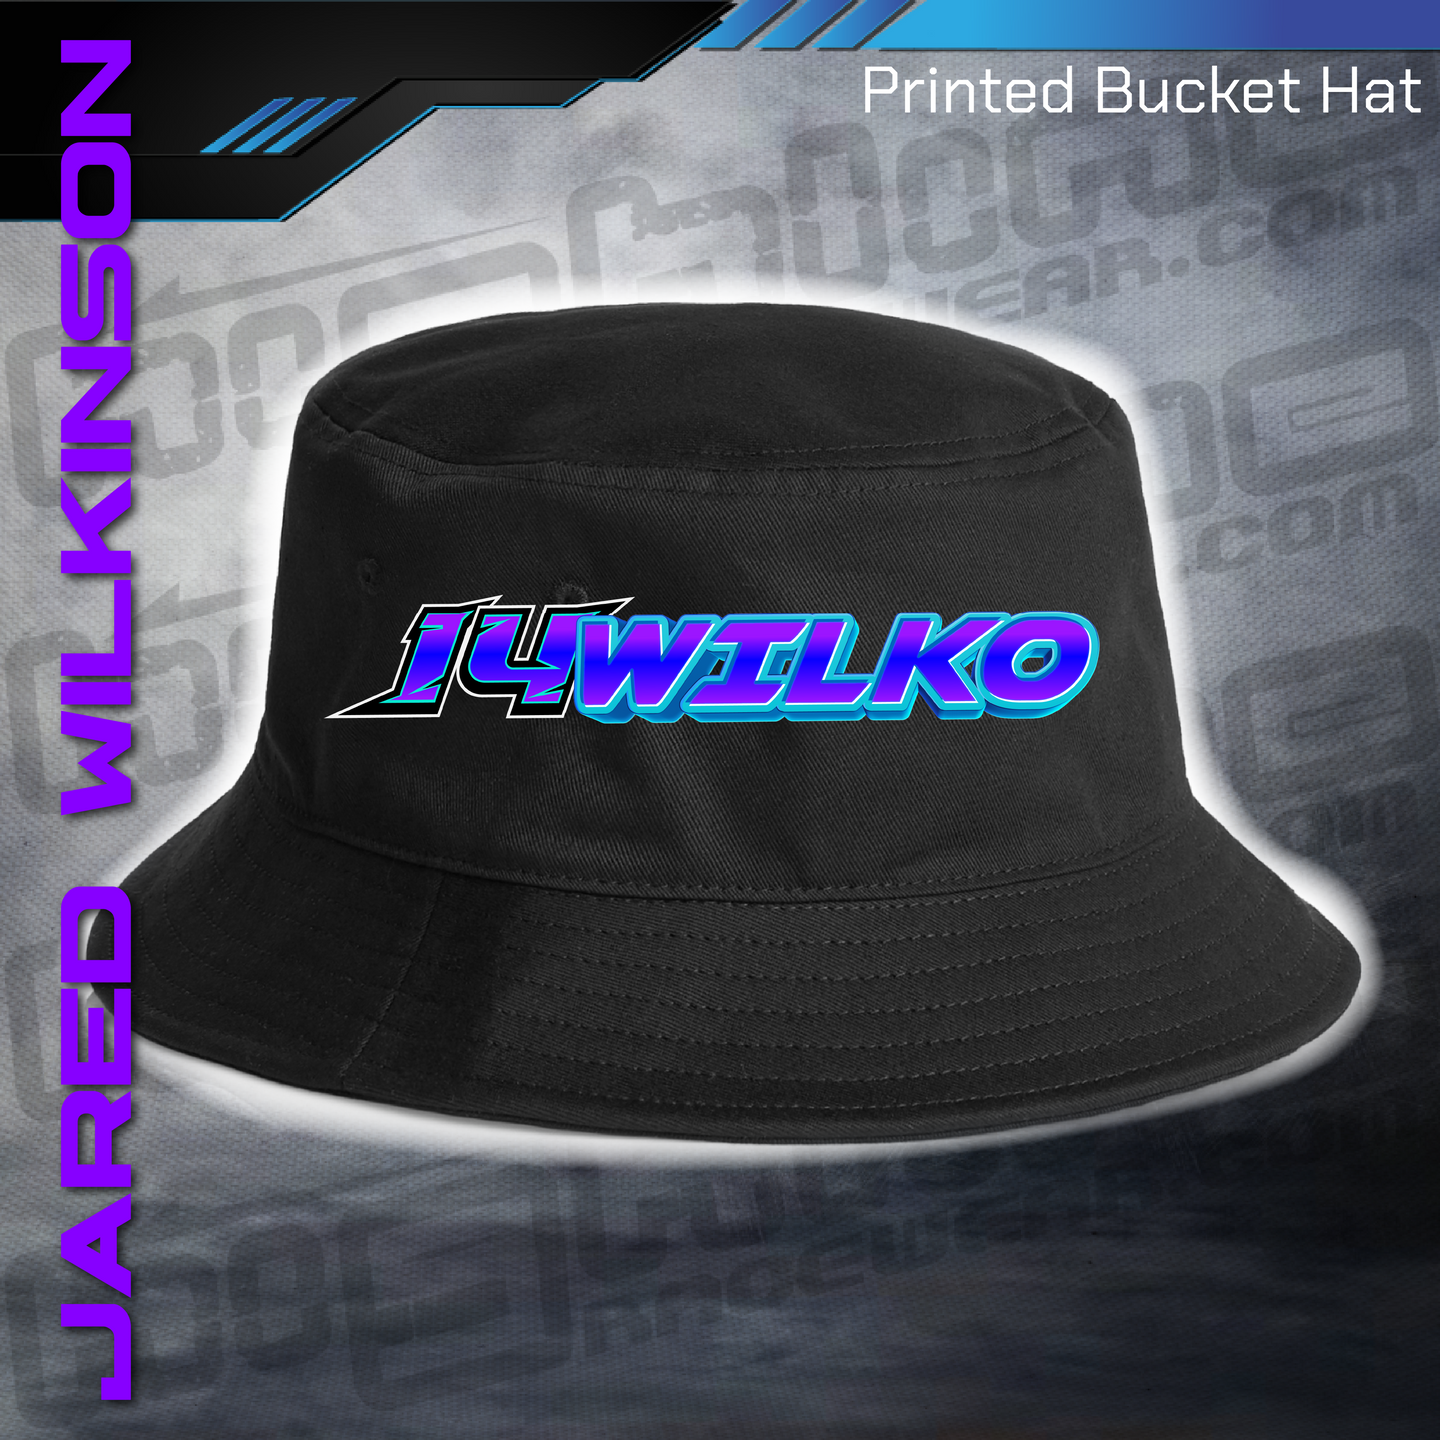 Printed Bucket Hat - Jared Wilkinson